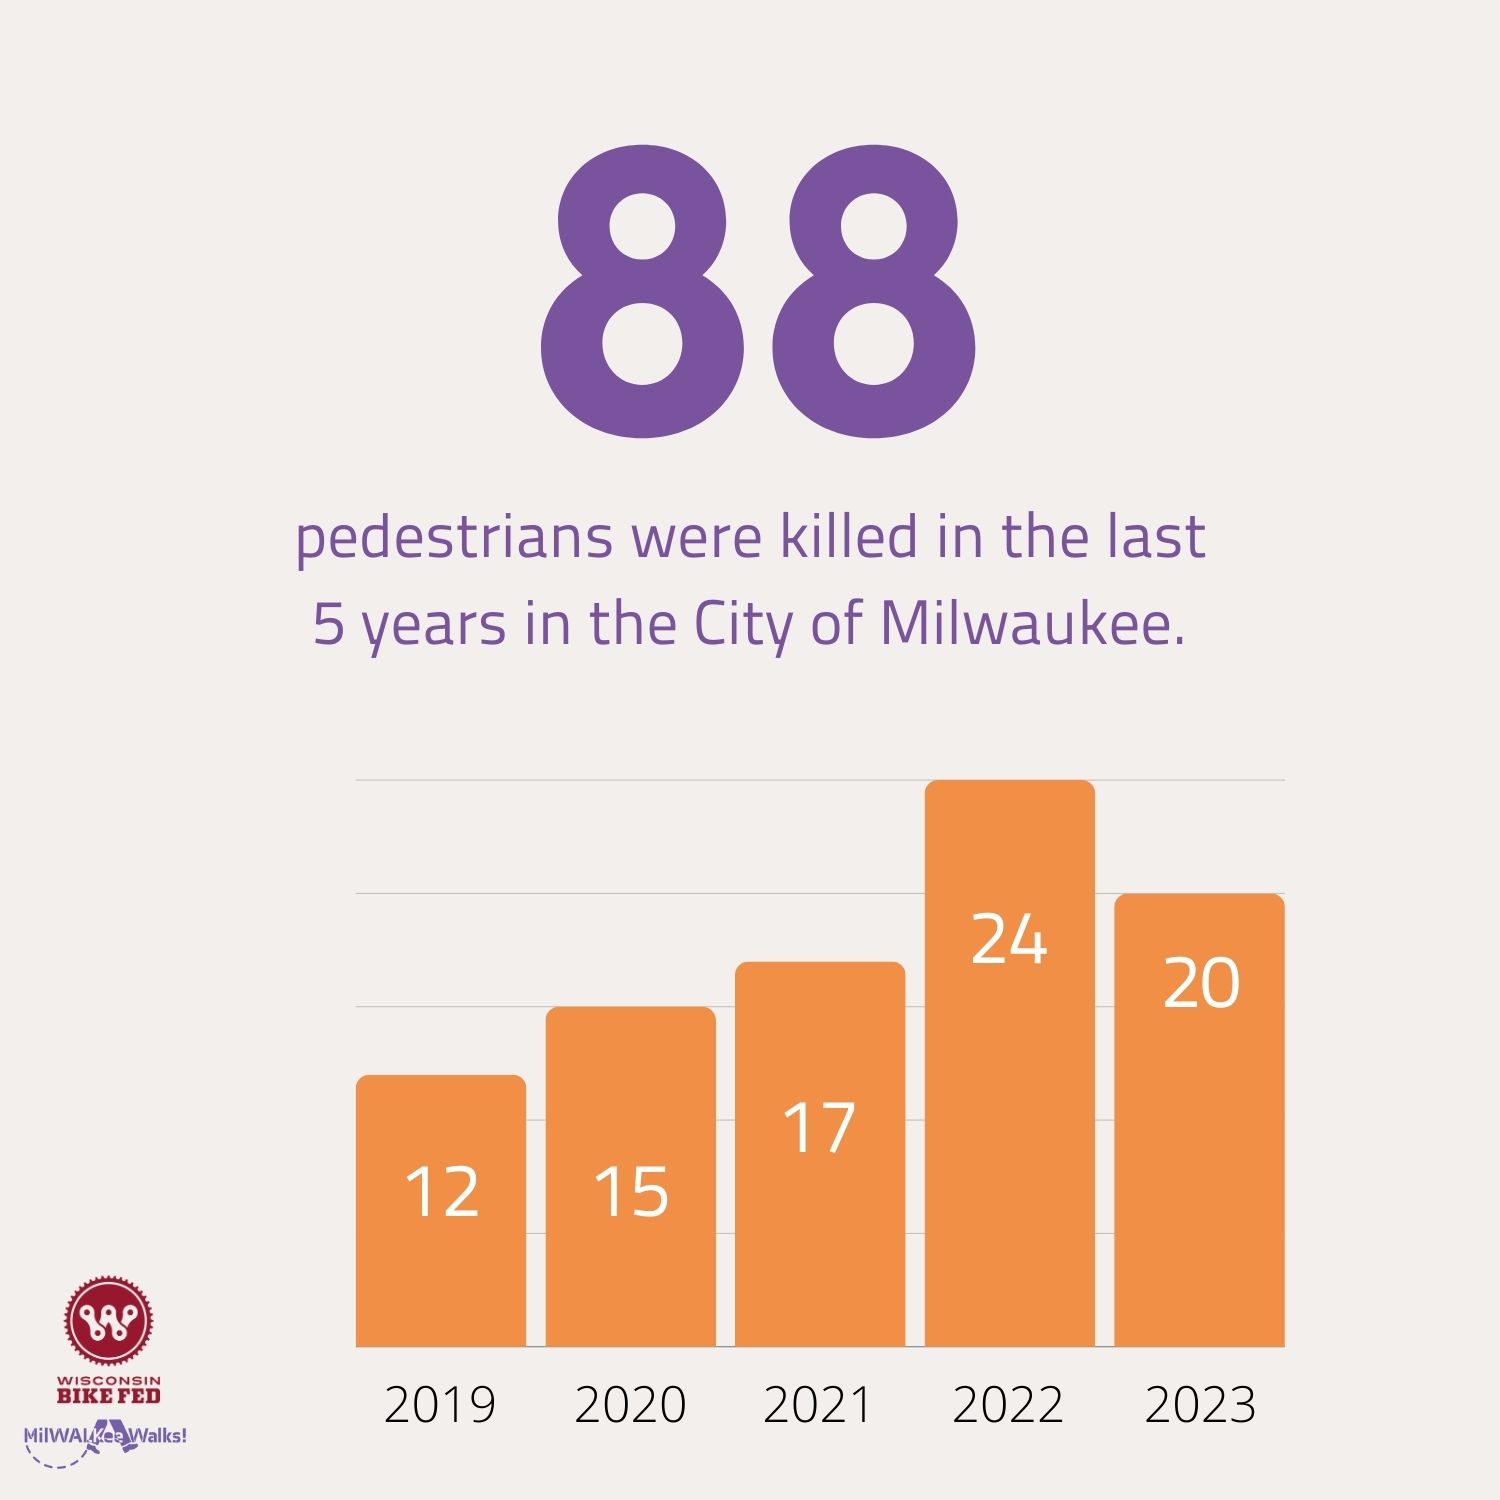 Milwaukee’s pedestrian fatalities in 2023